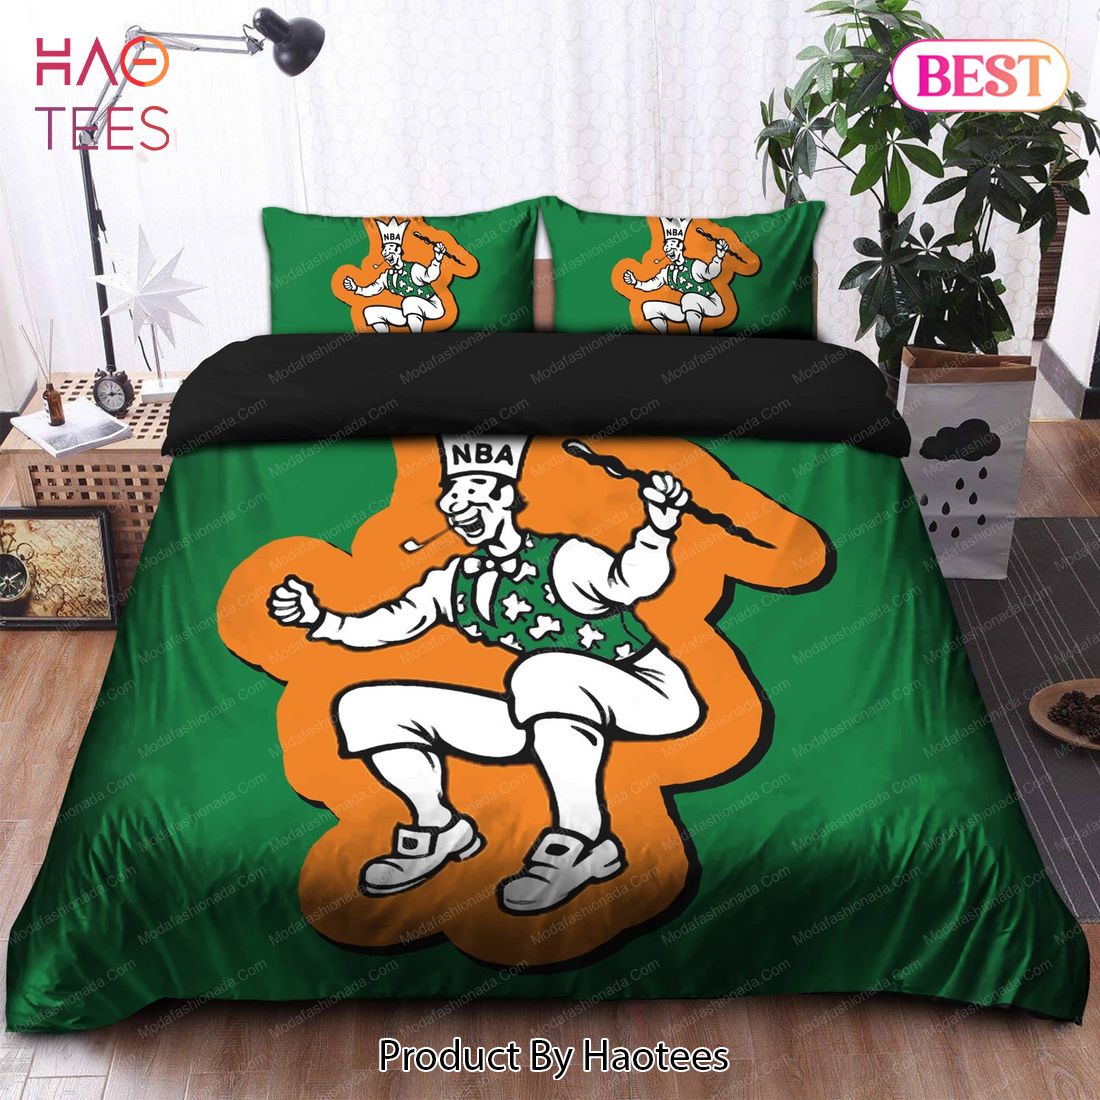 Buy 1960-1968 Logo Boston Celtics NBA 120 Bedding Sets Bed Sets, Bedroom Sets, Comforter Sets, Duvet Cover, Bedspread